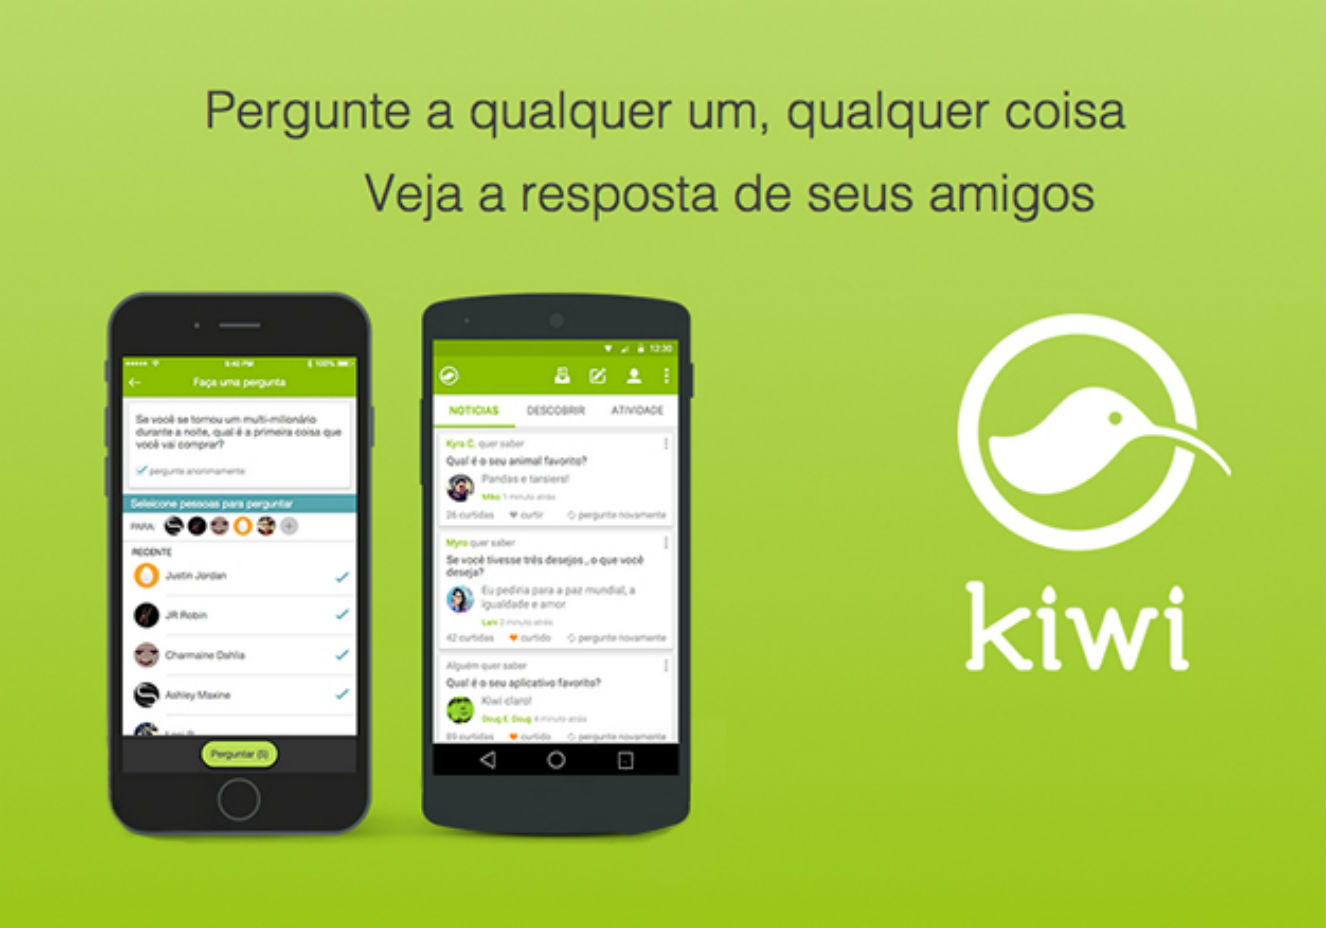 Conheça o Kiwi, aplicativo que permite fazer perguntas anônimas | CLAUDIA